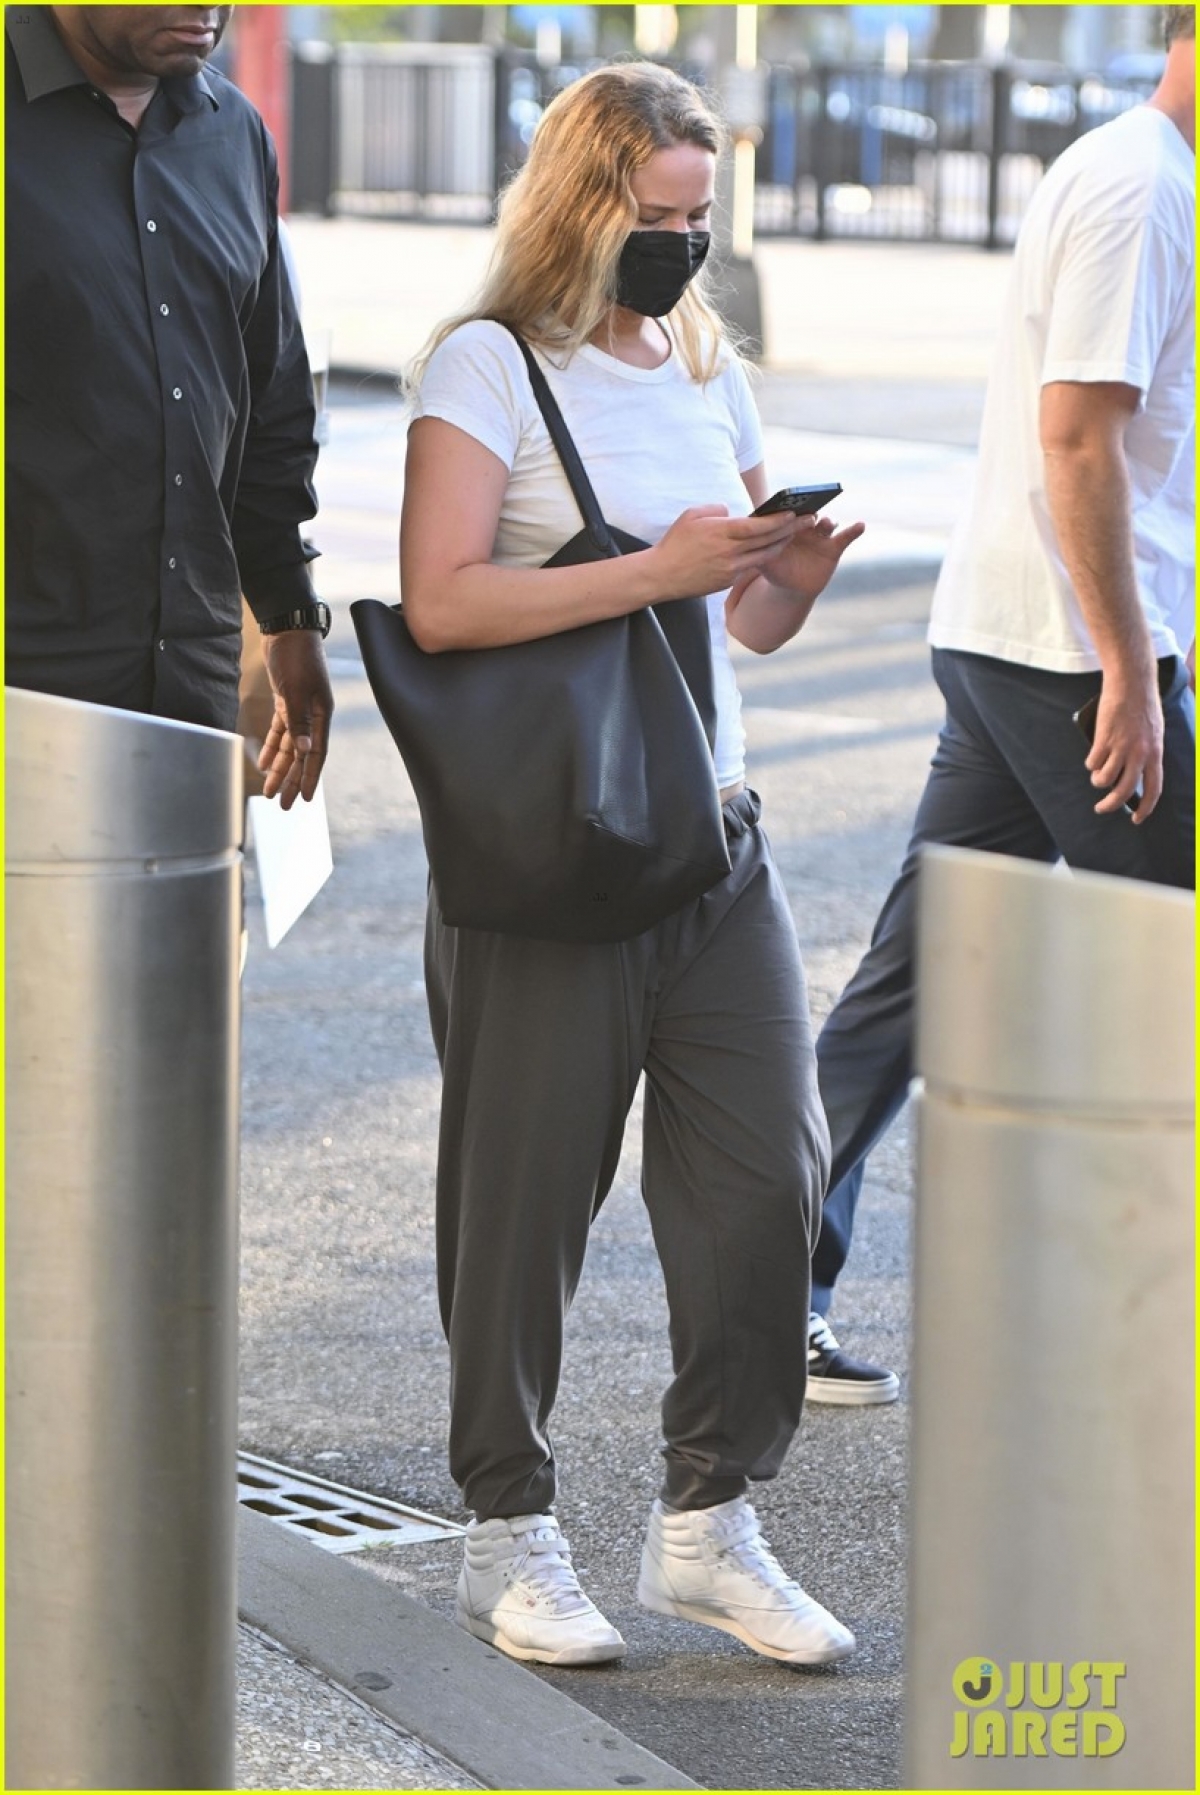 Vợ chồng Jennifer Lawrence lên đồ đồng điệu tái xuất ở sân bay - ảnh 4